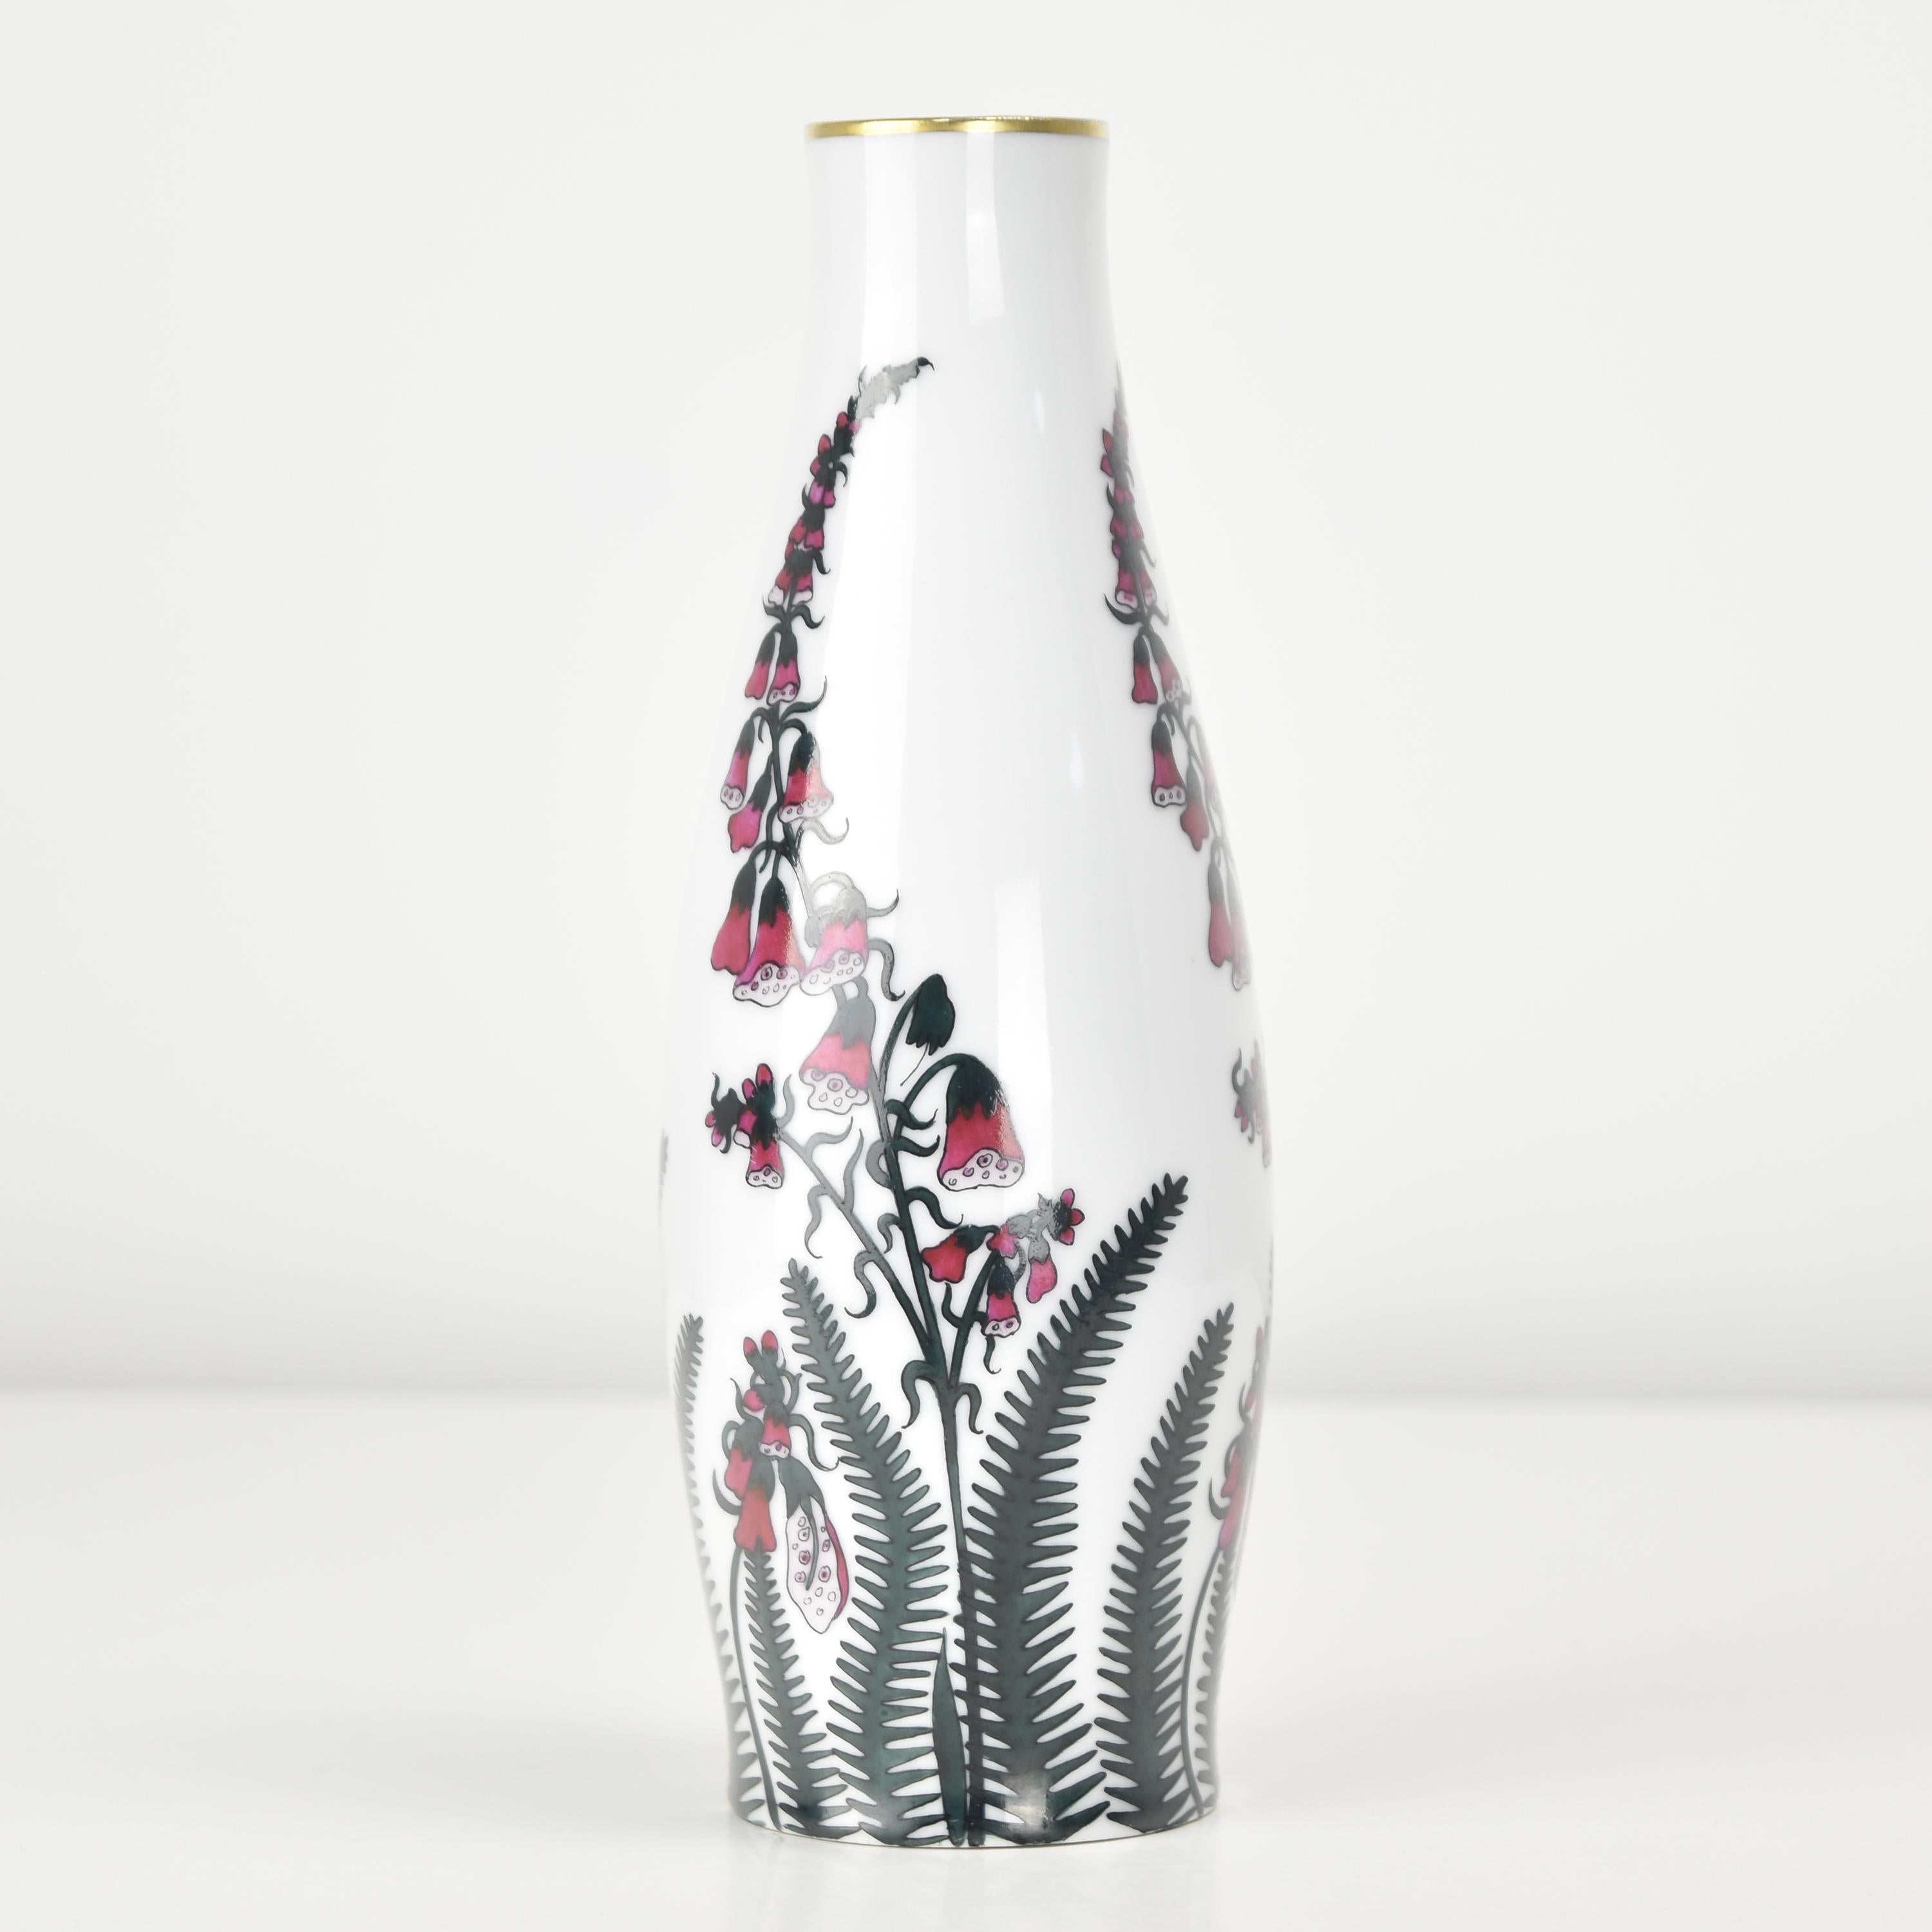 German Handpainted Vase Art Nouveau Porcelain Masterpiece by Fraureuth Art Department For Sale